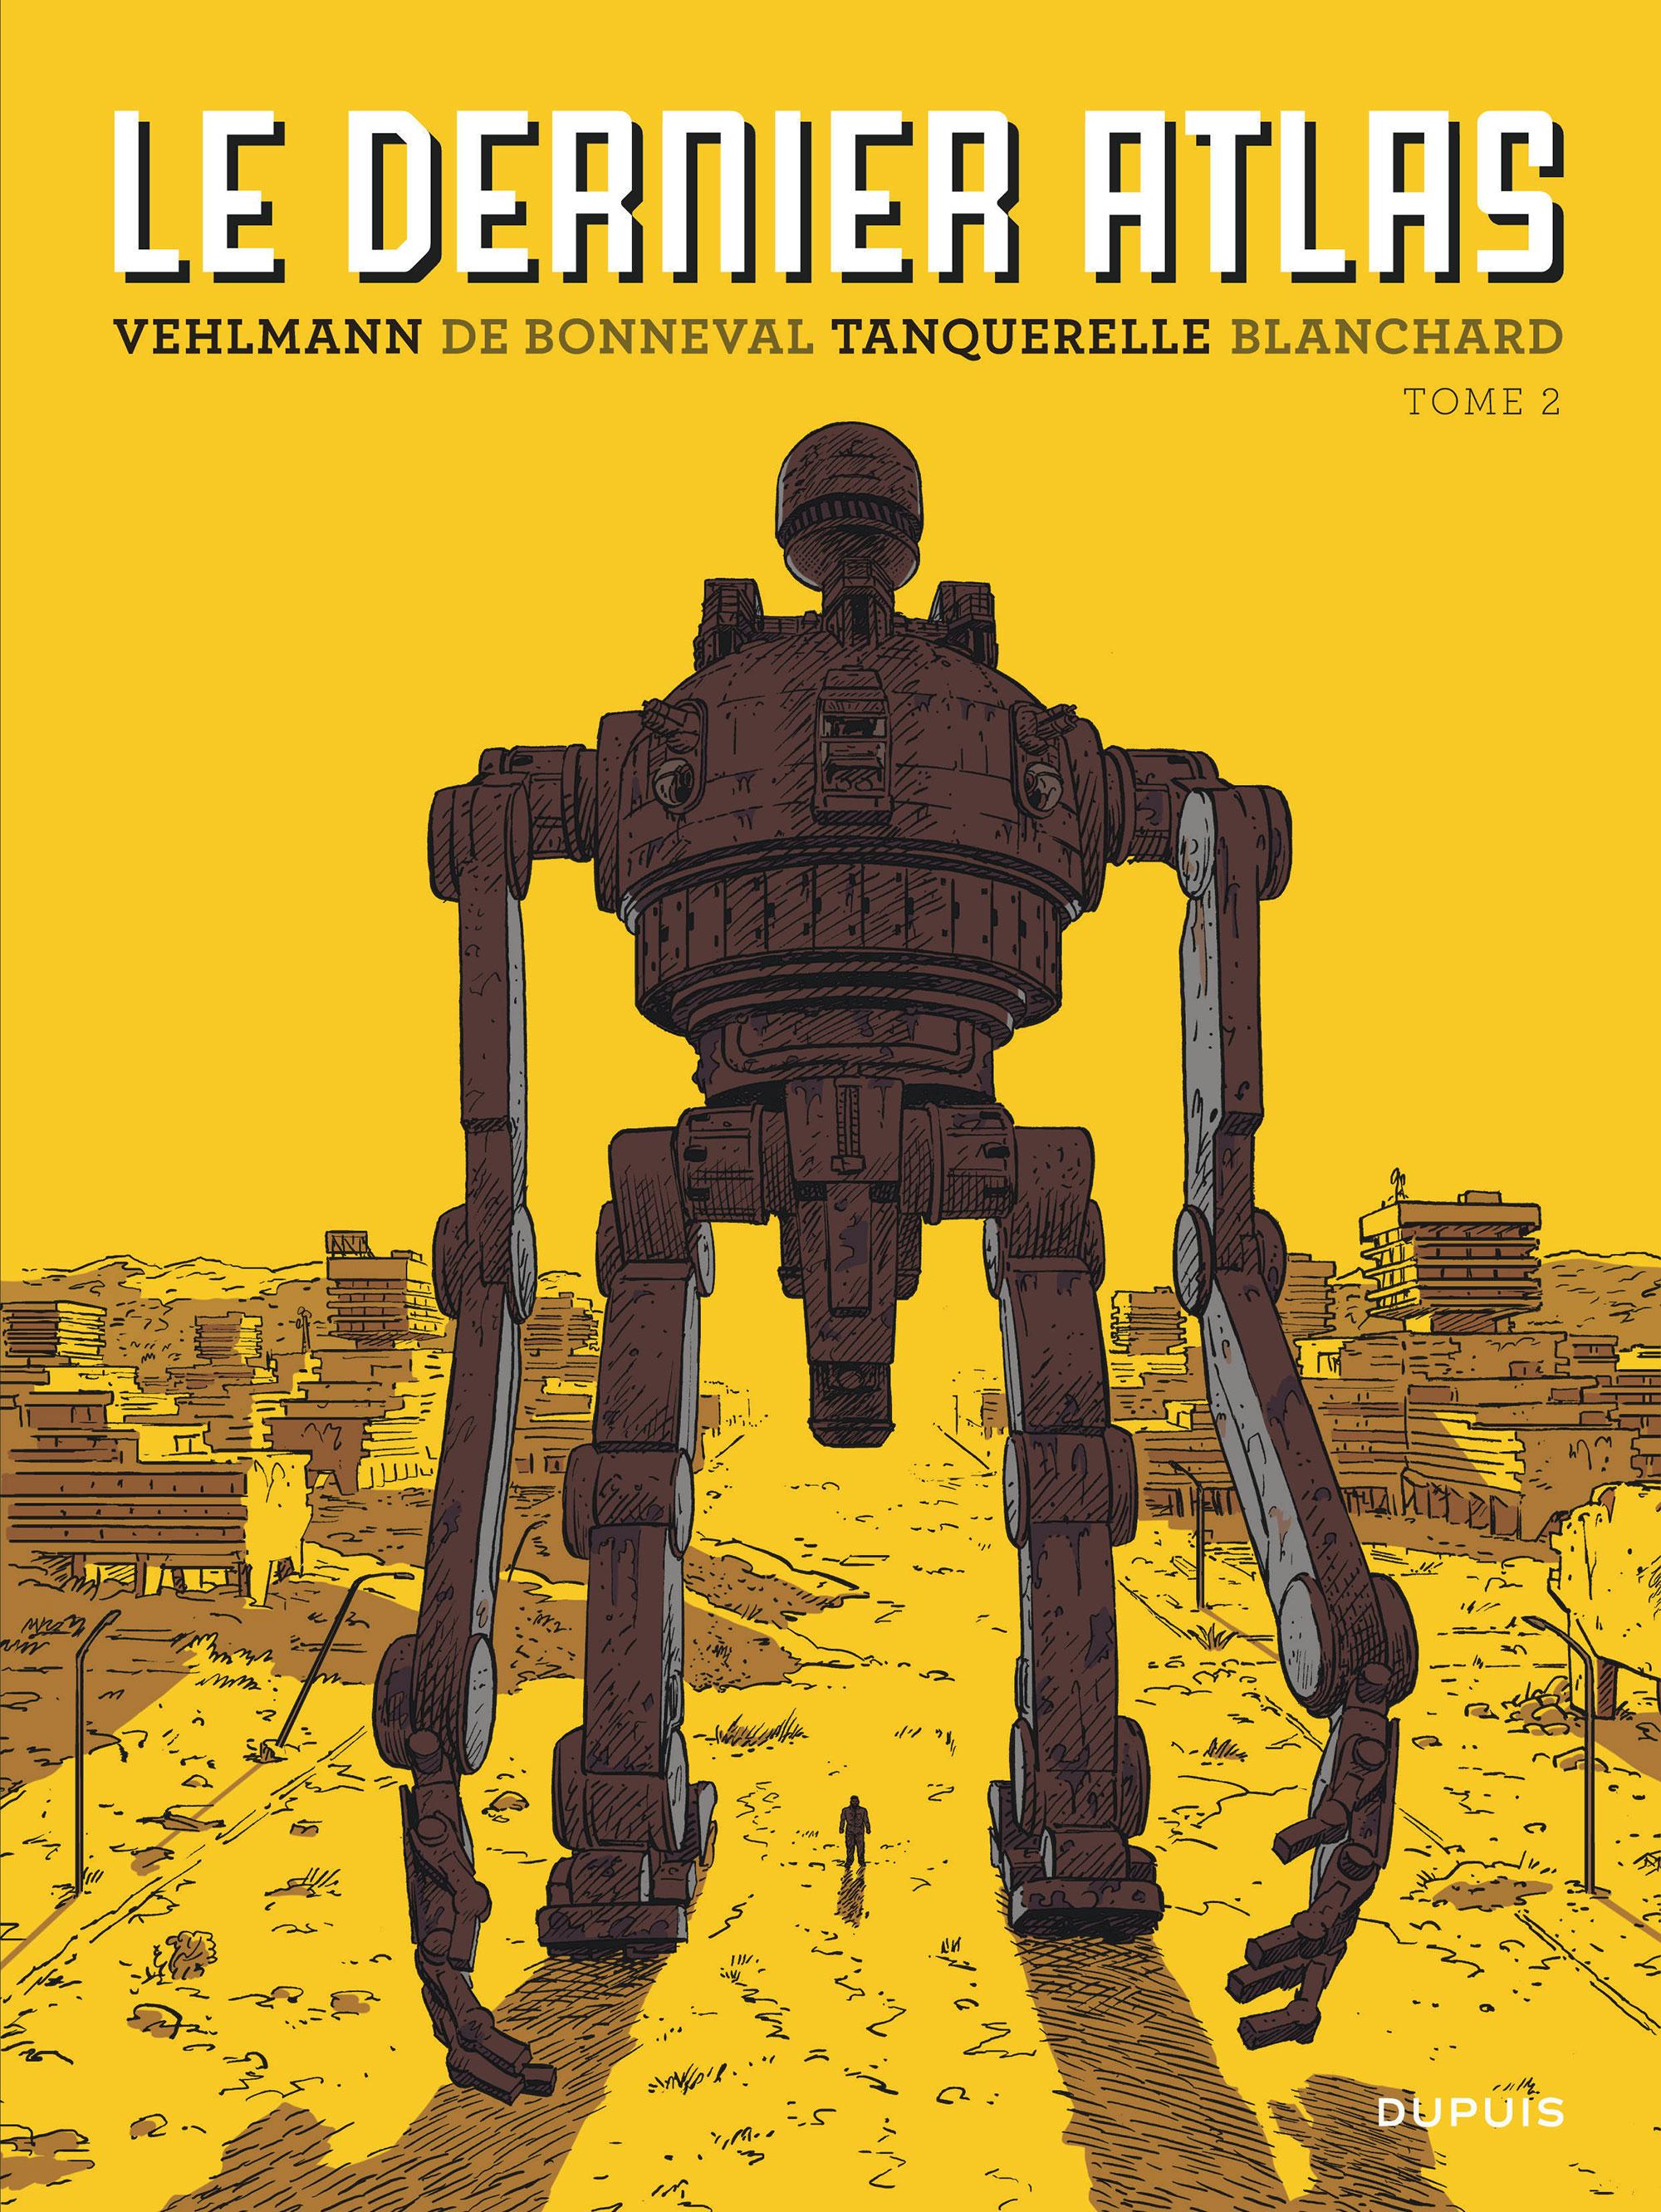 La couverture de la BD "Le dernier Atlas. Tome 2" de Vehlmann, De Bonneval, Tanquerelle et Blanchard. [Editions Dupuis]